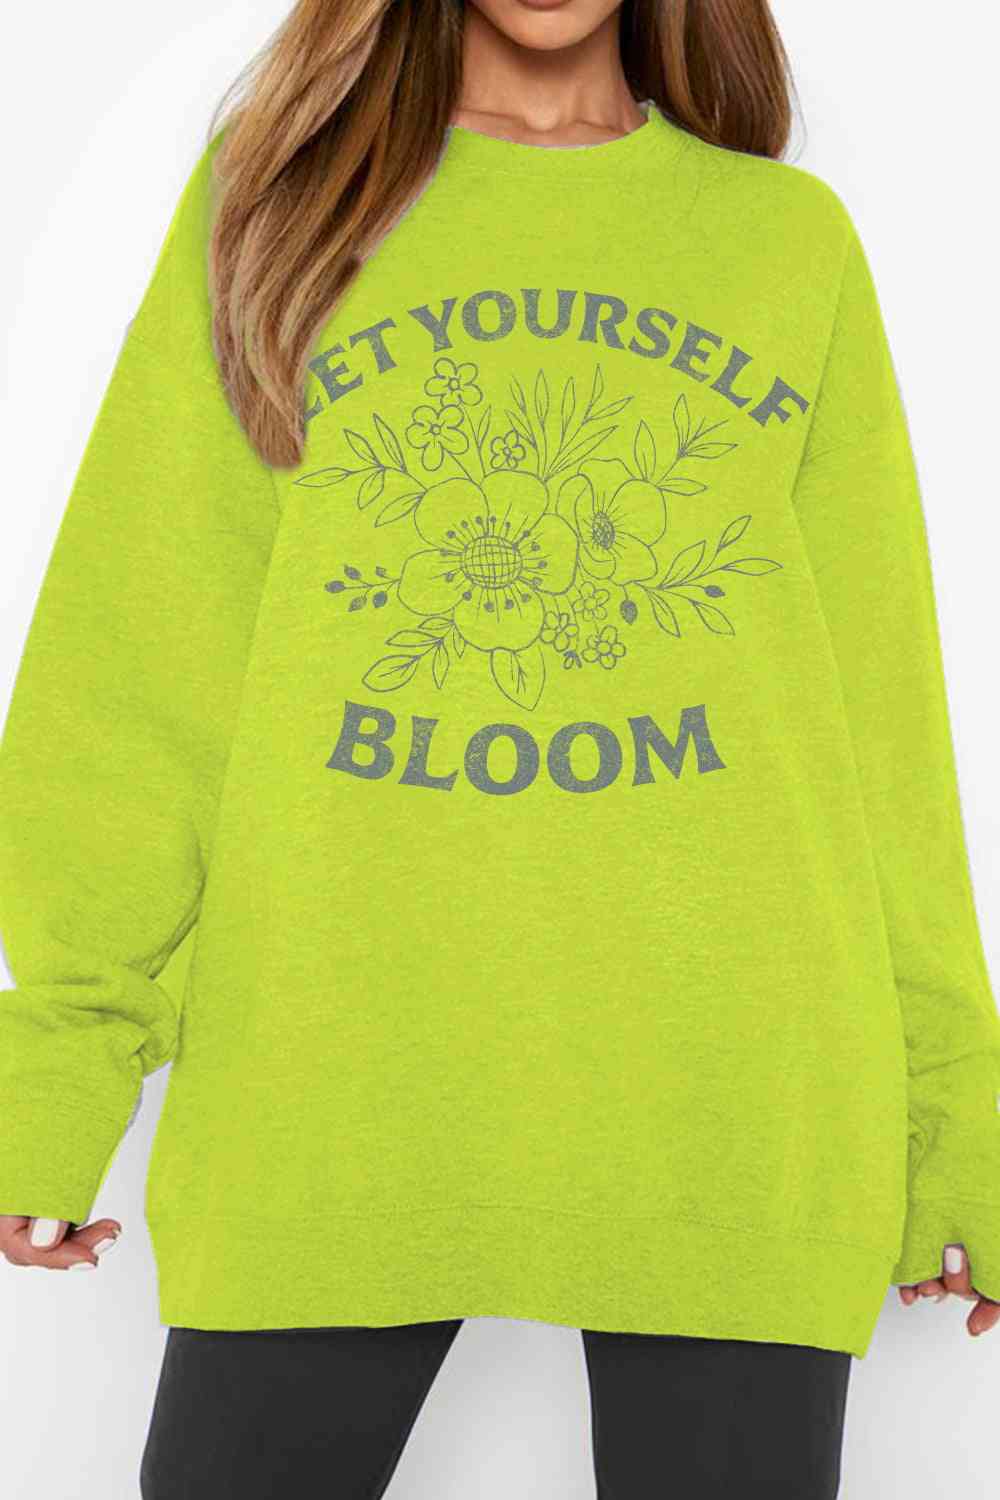 LET YOURSELF BLOOM Graphic Sweatshirt